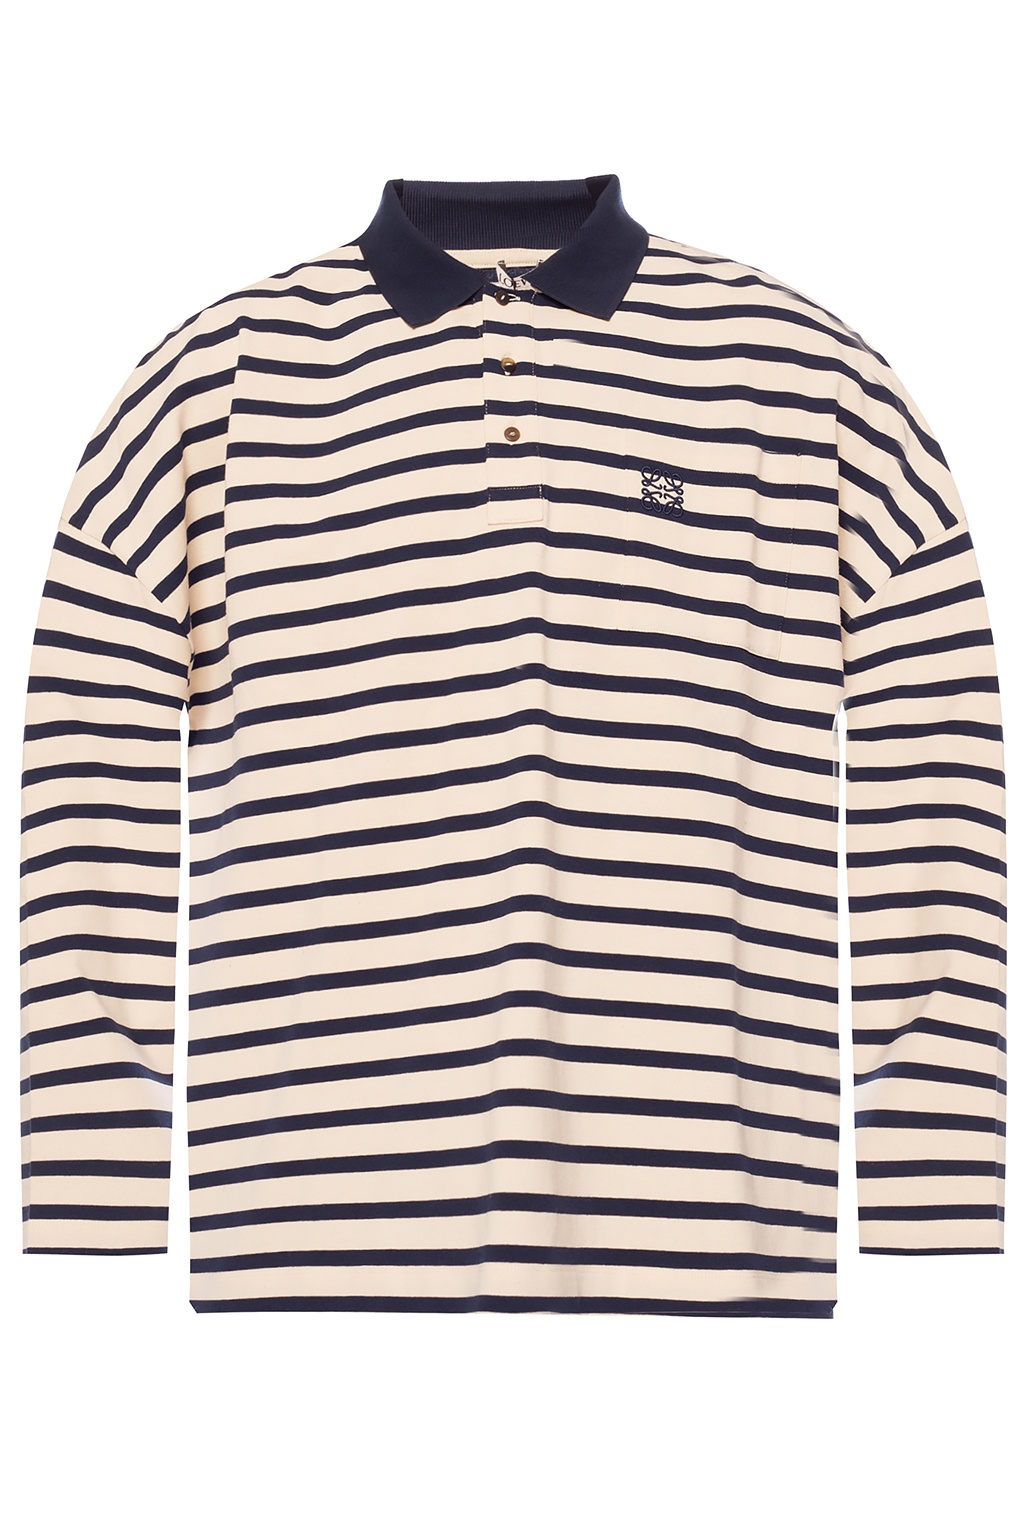 IetpShops | Men's Clothing | Loewe Polo shirt with logo